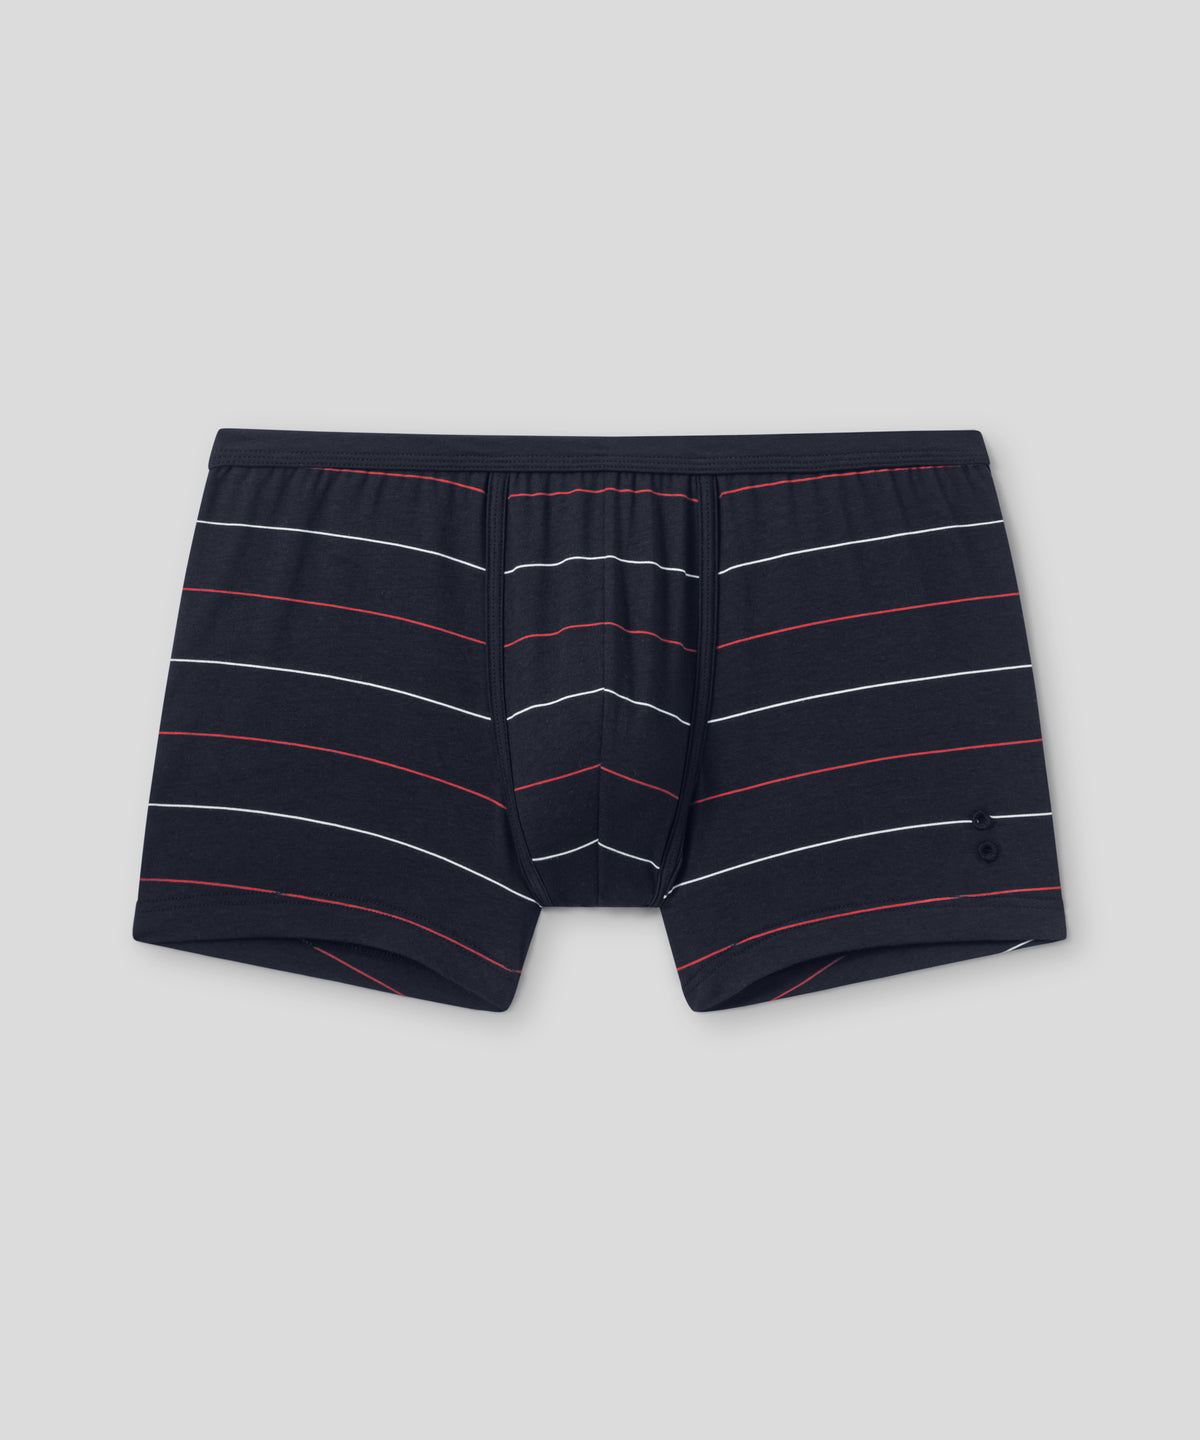 Boxer Briefs w. Tennis Stripes: Navy